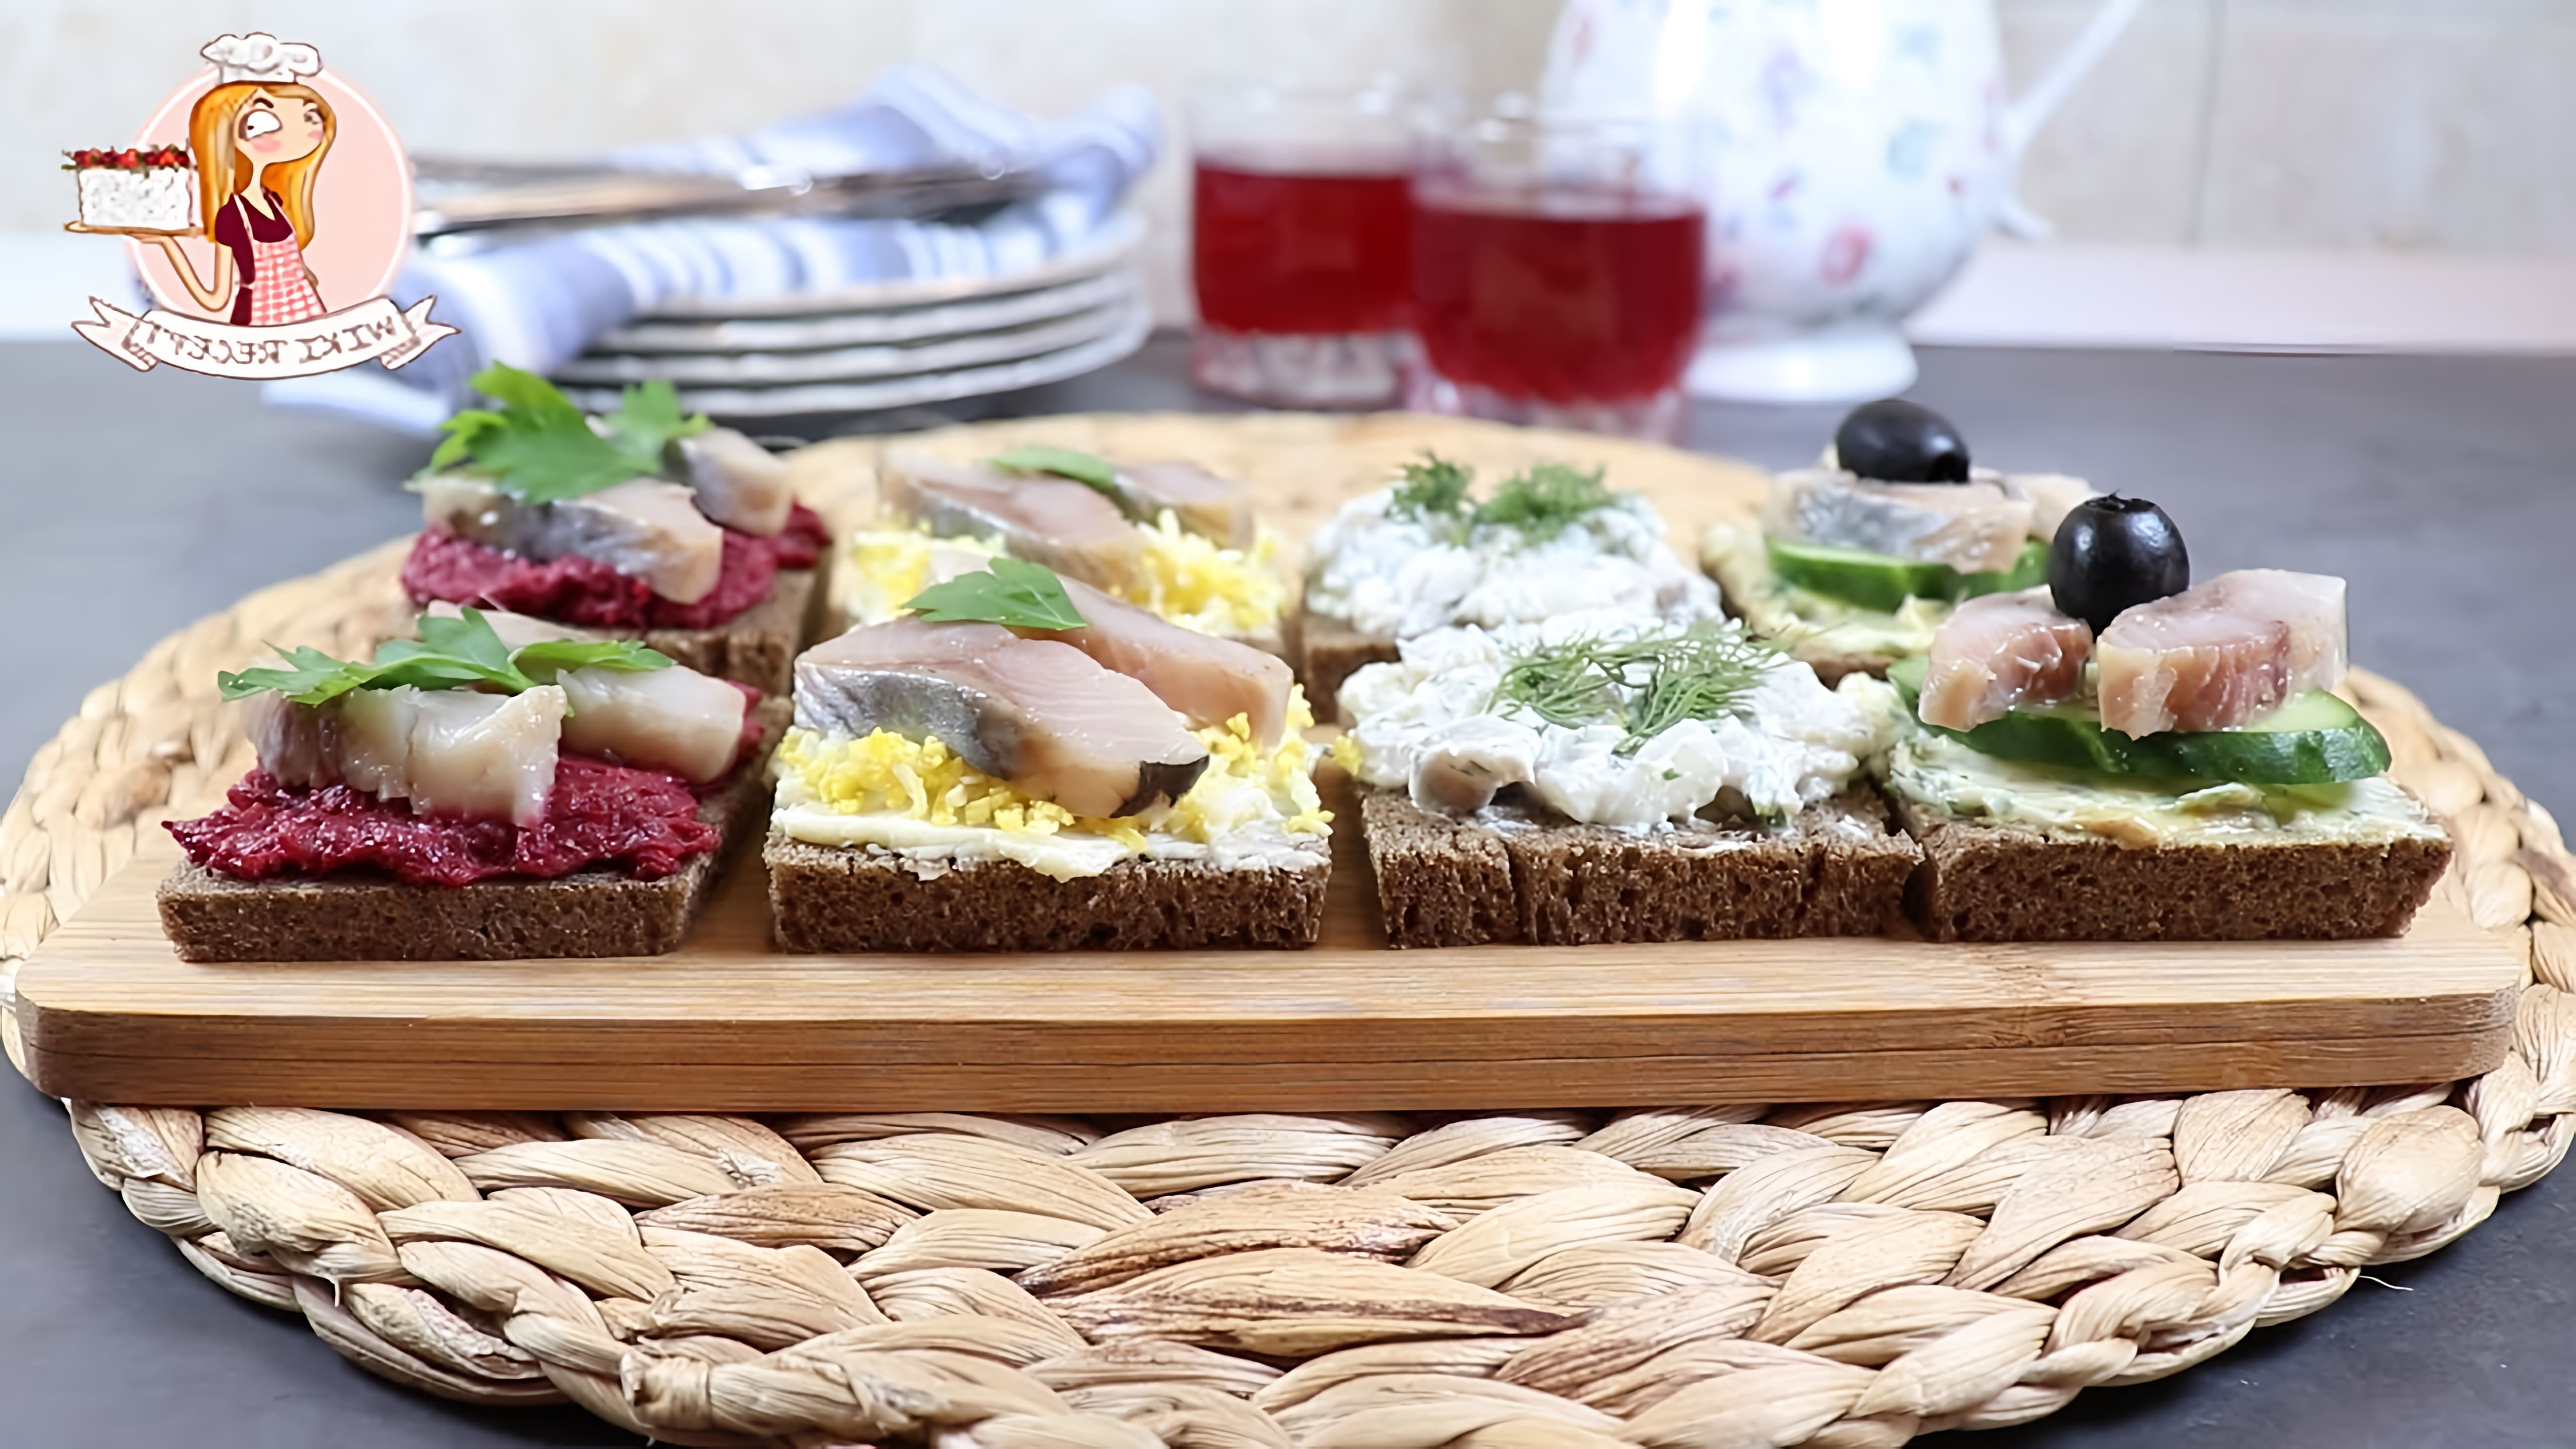 В этом видео демонстрируются четыре различных рецепта бутербродов с селедкой на черном хлебе